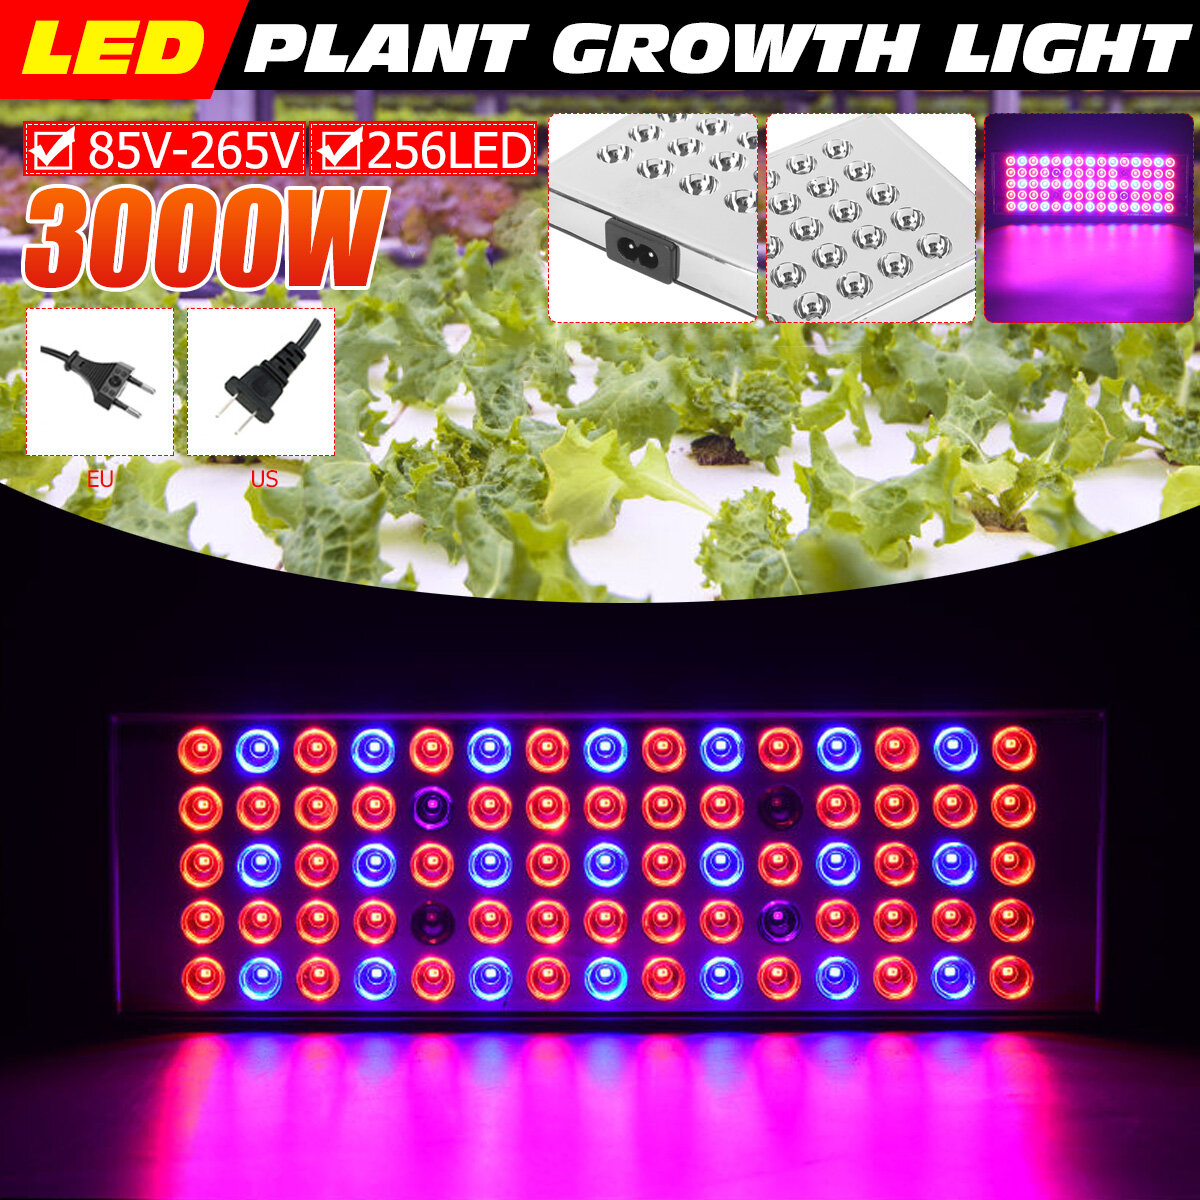 800W LED Grow Light Full Spectrum Growing Plant Lamp voor hydrocultuur Veg Indoor